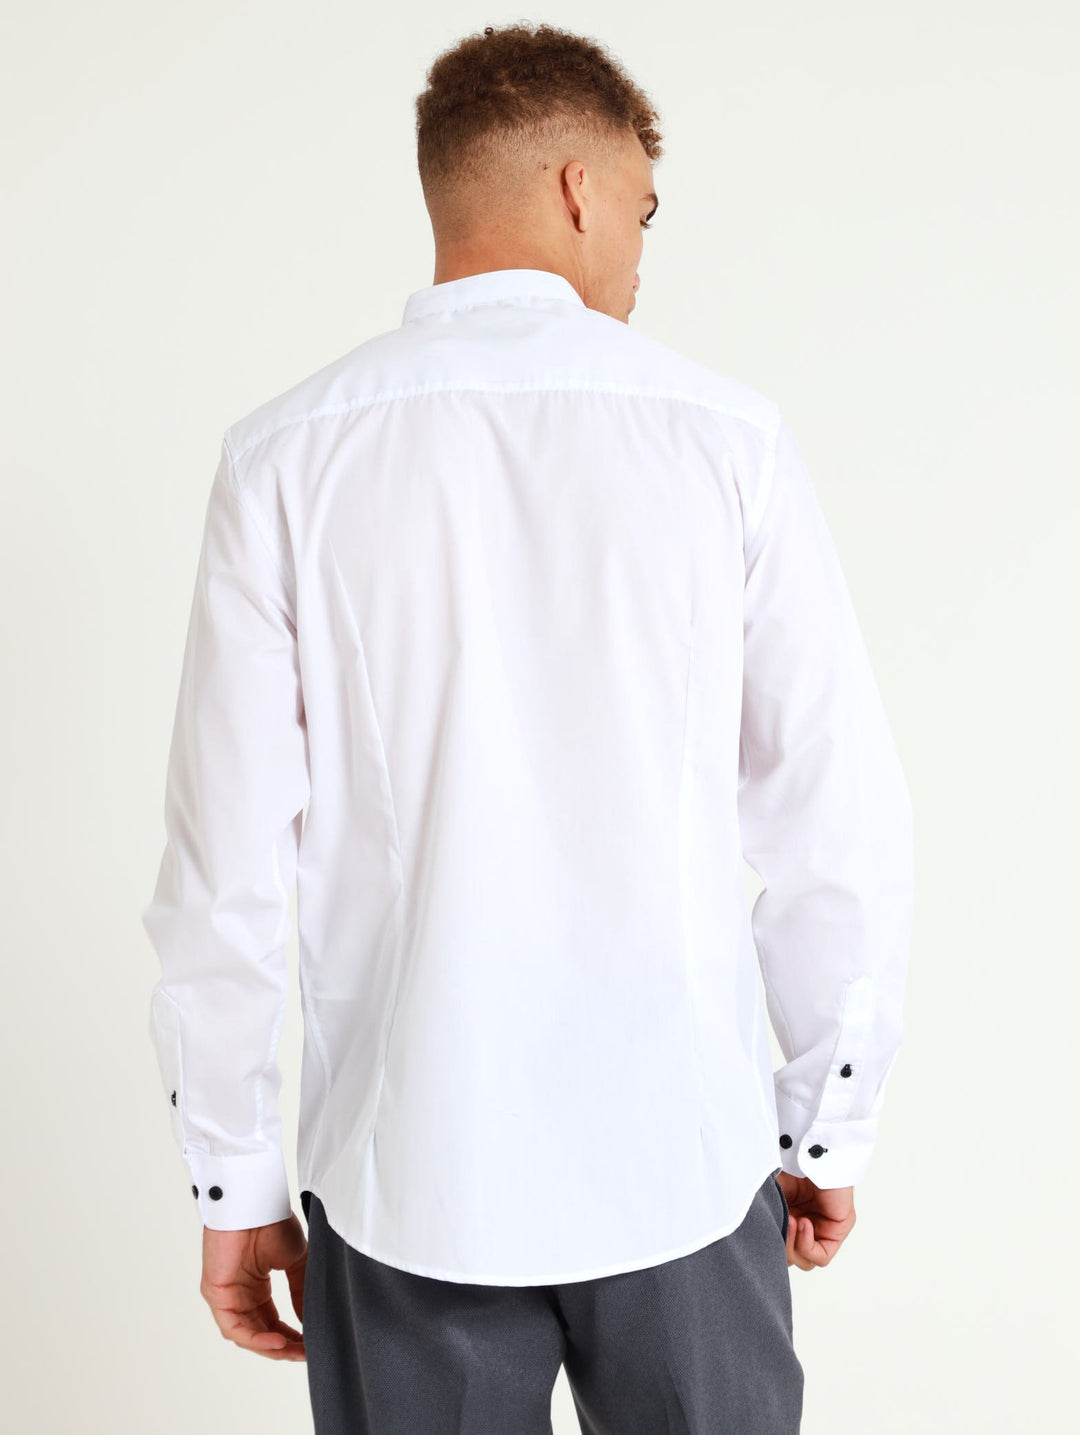 1Up Manderin Shirt - White